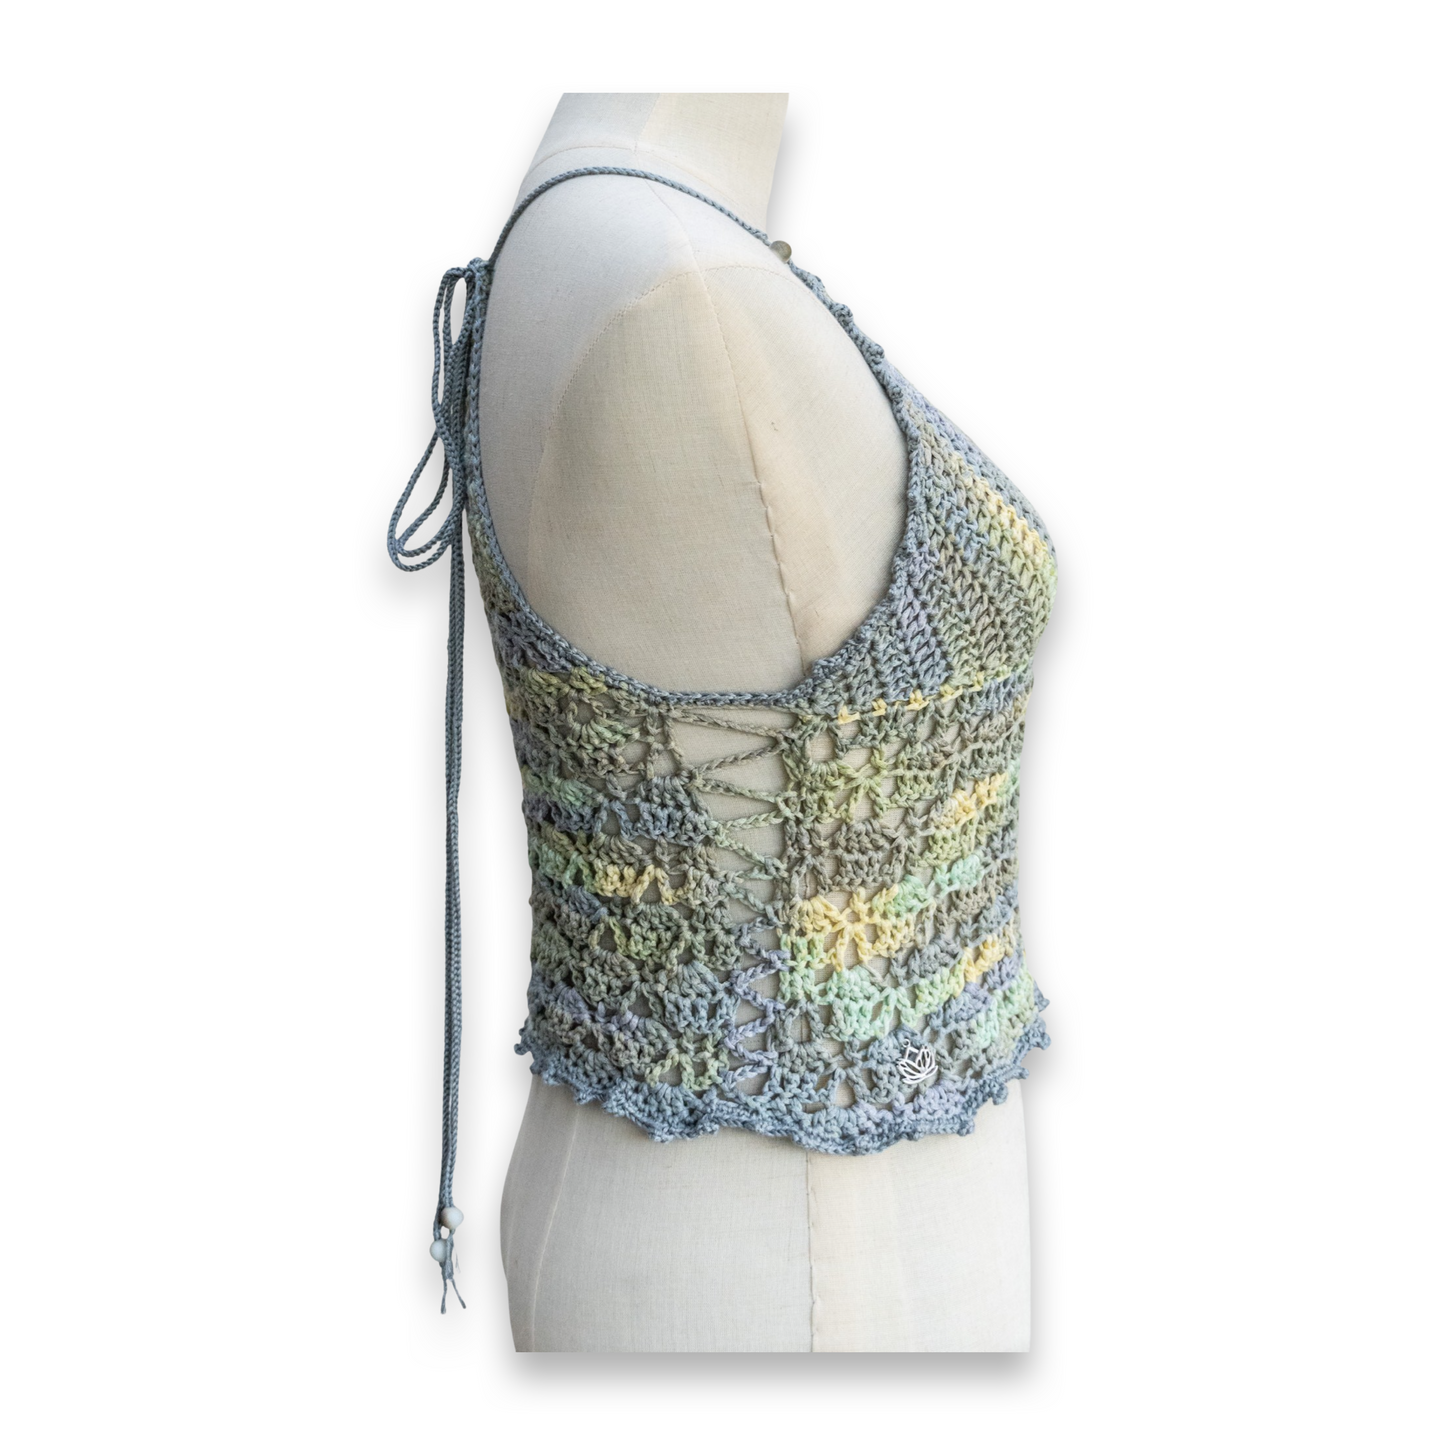 Crochet Summer Top (Aqua Melange)